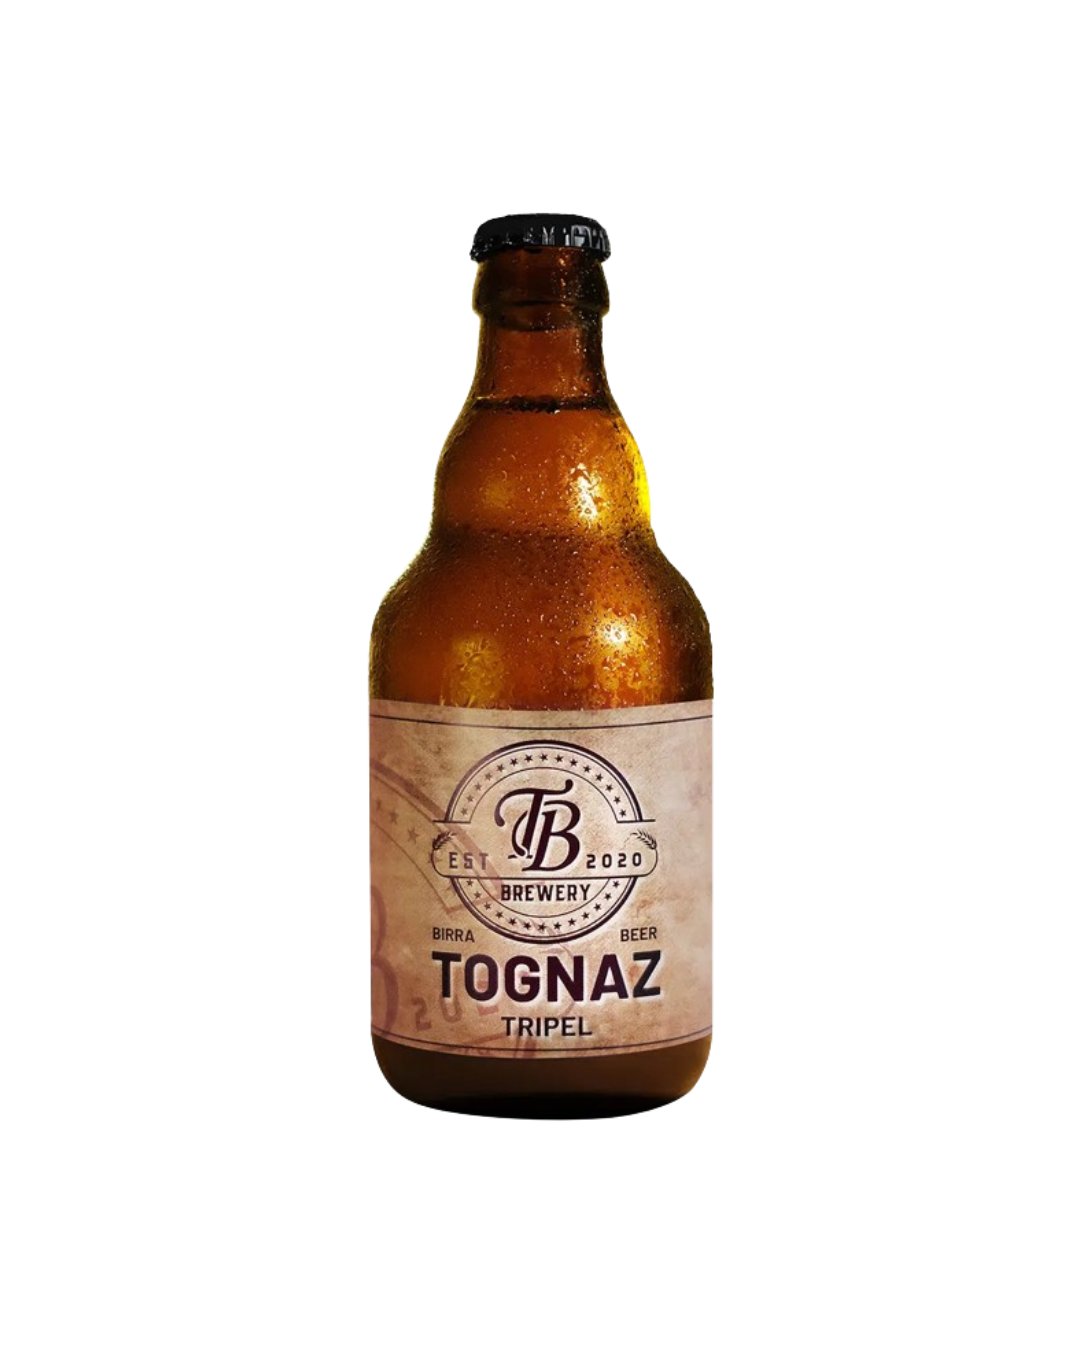 Tognaz - Tripel Vol. 7% - TB Brewery